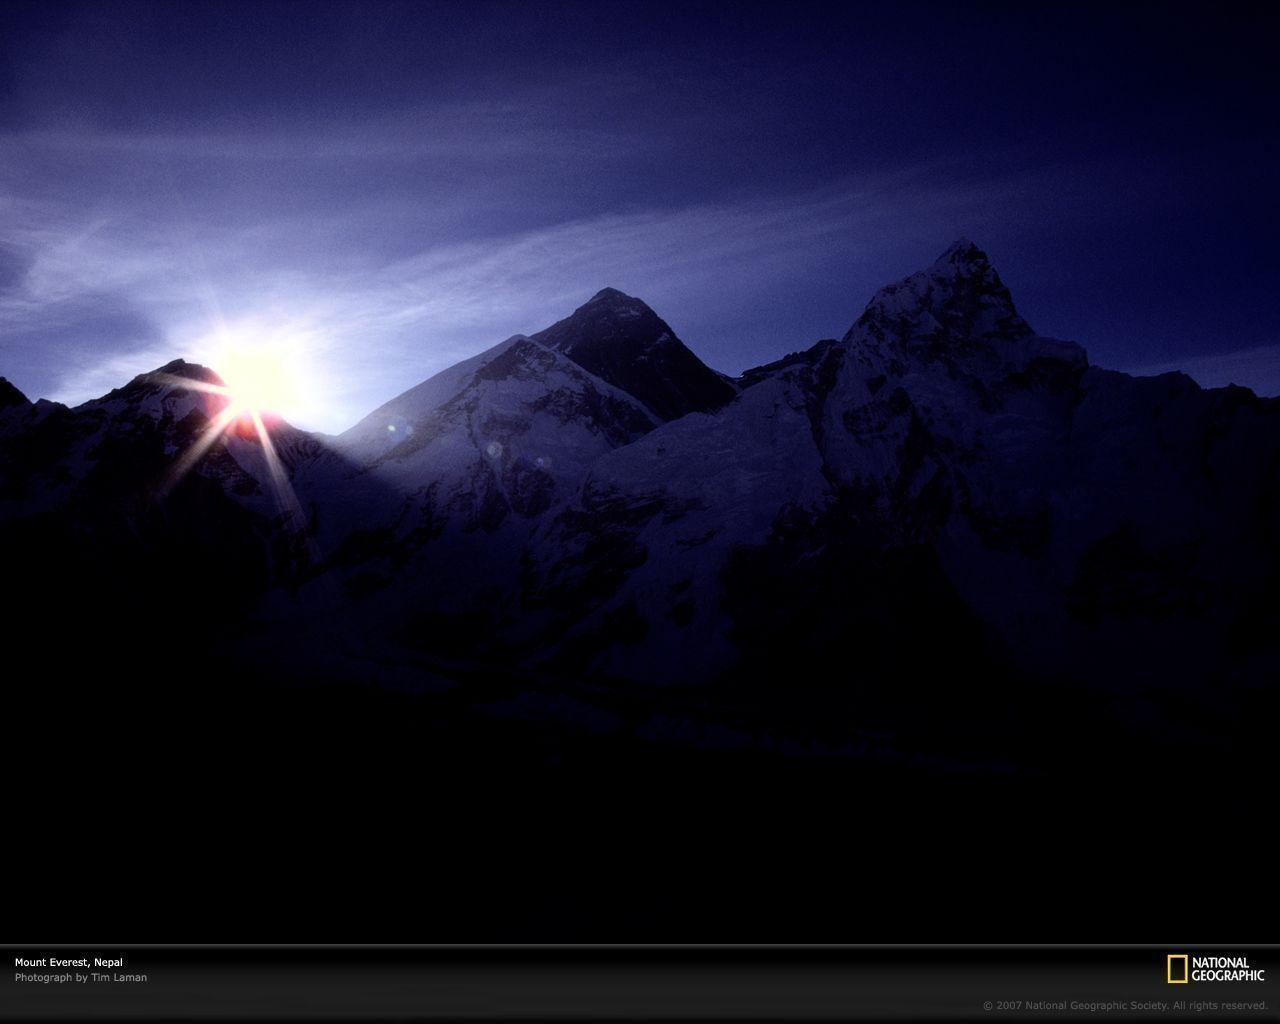 Mount Everest and Himalaya